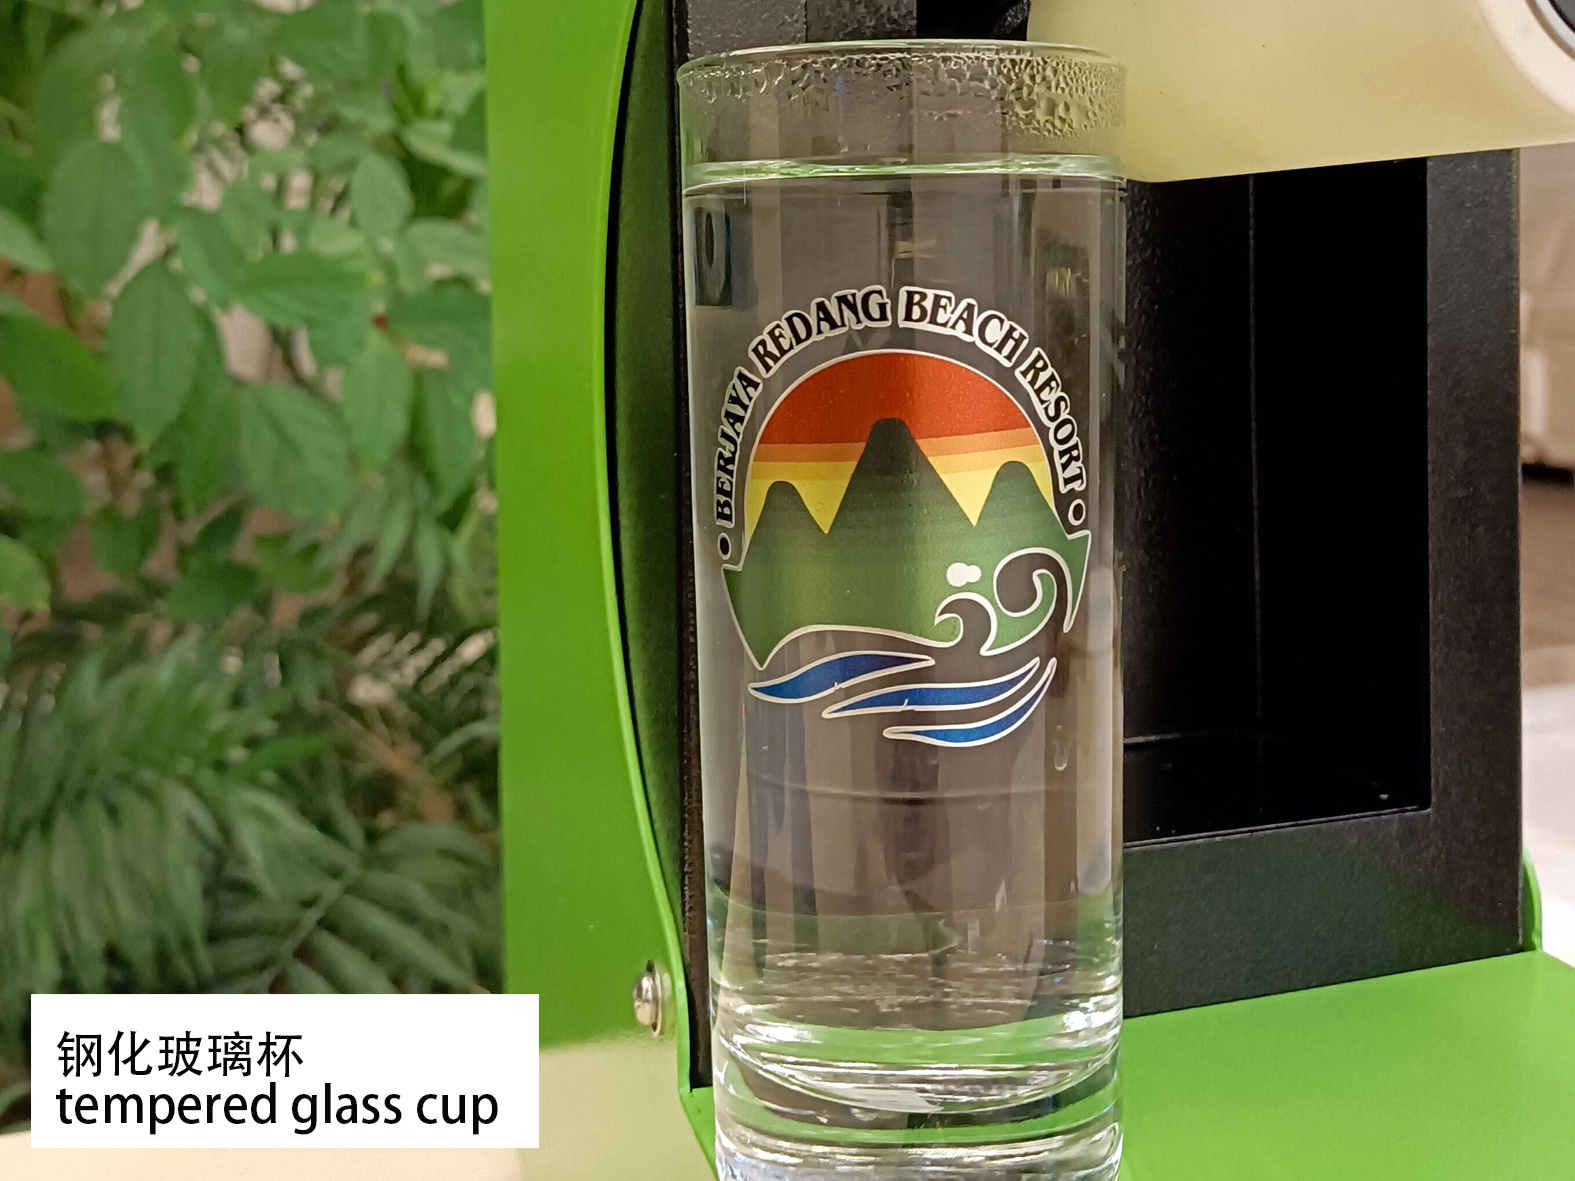 Haga sus etiquetas, logotipos y marcas de vasos de vidrio templado con lámina adhesiva HSFS-300S